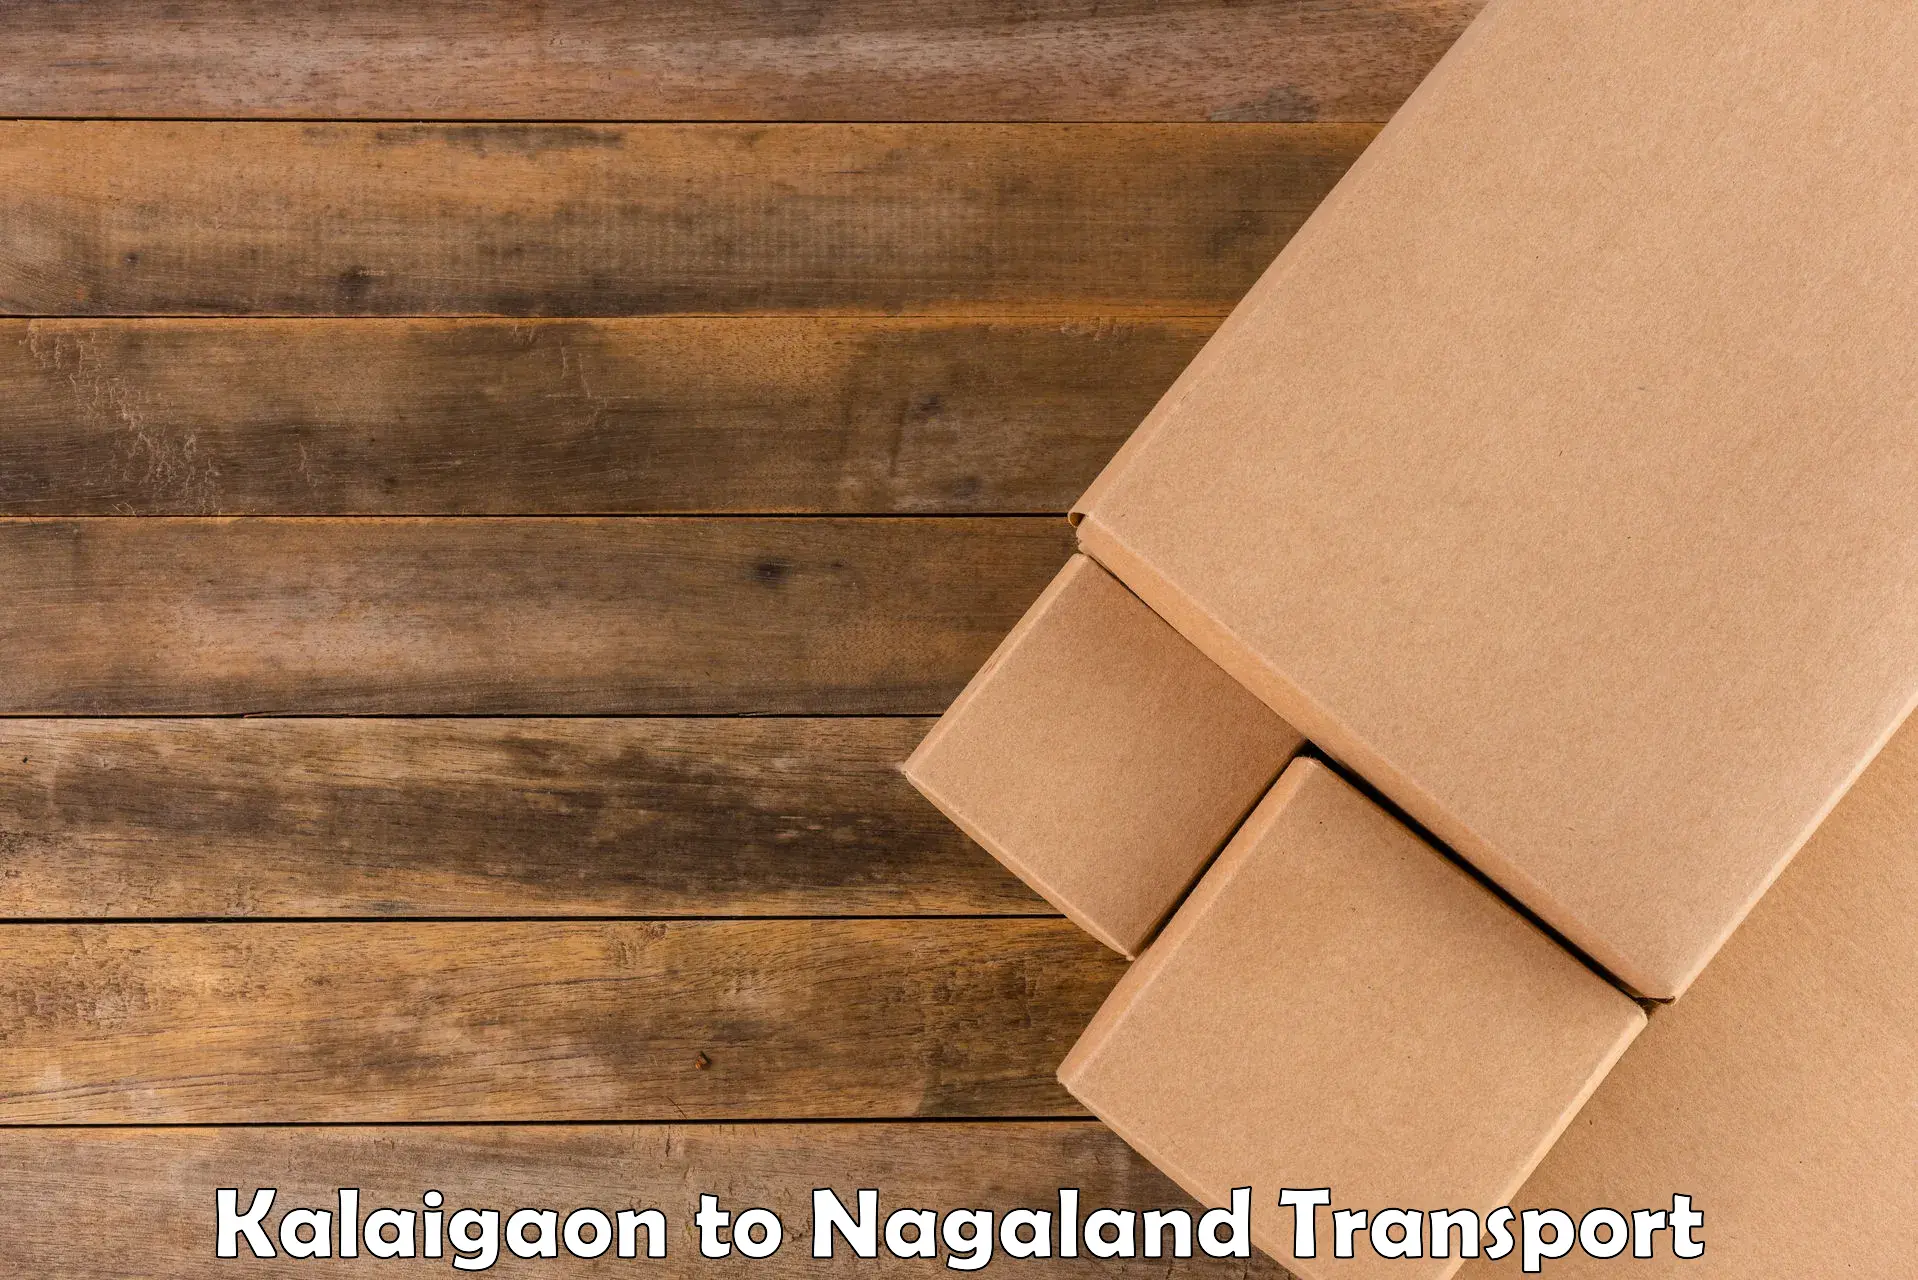 Nearest transport service Kalaigaon to Nagaland